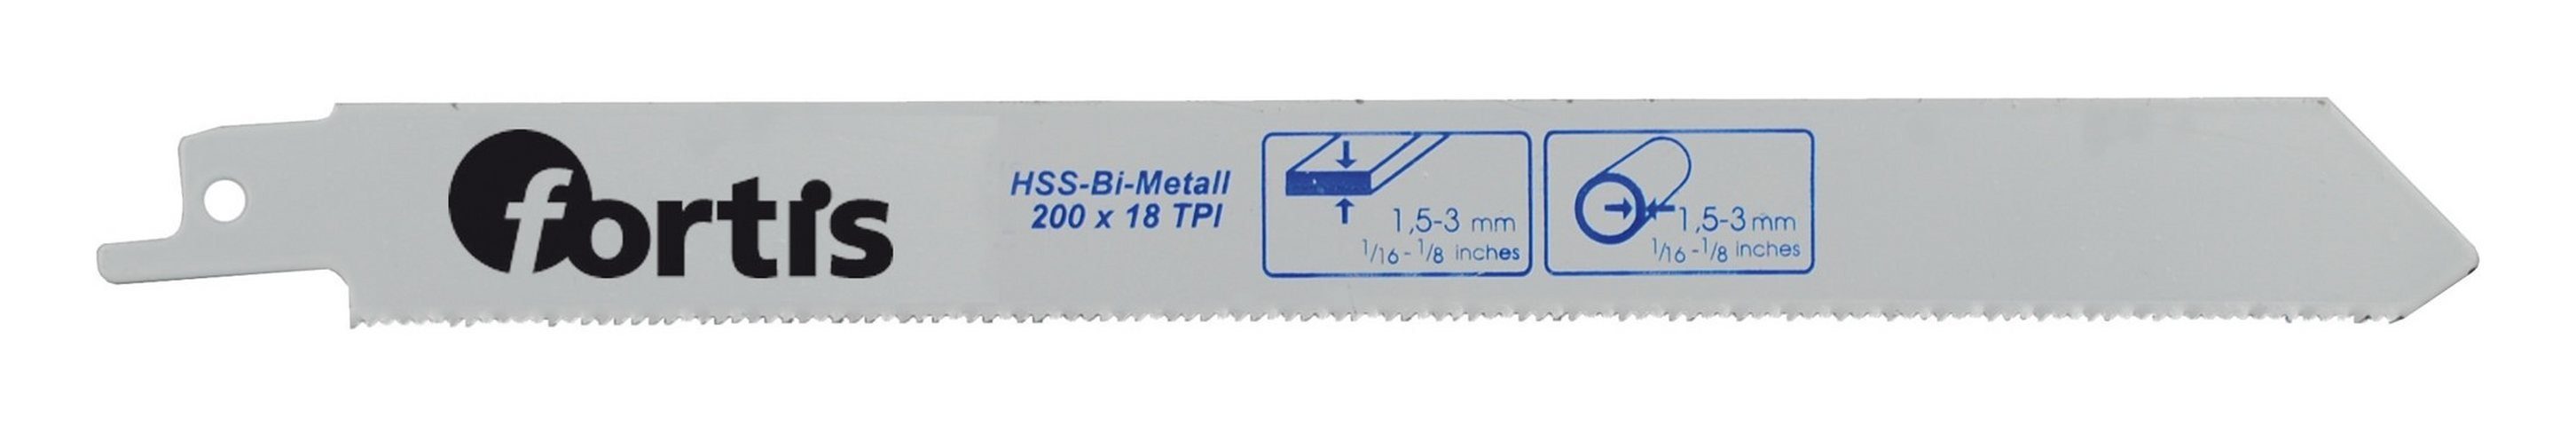 180 200 / (2 fortis / Bi-Metall Stück), 1,4 Säbelsägeblatt HSS